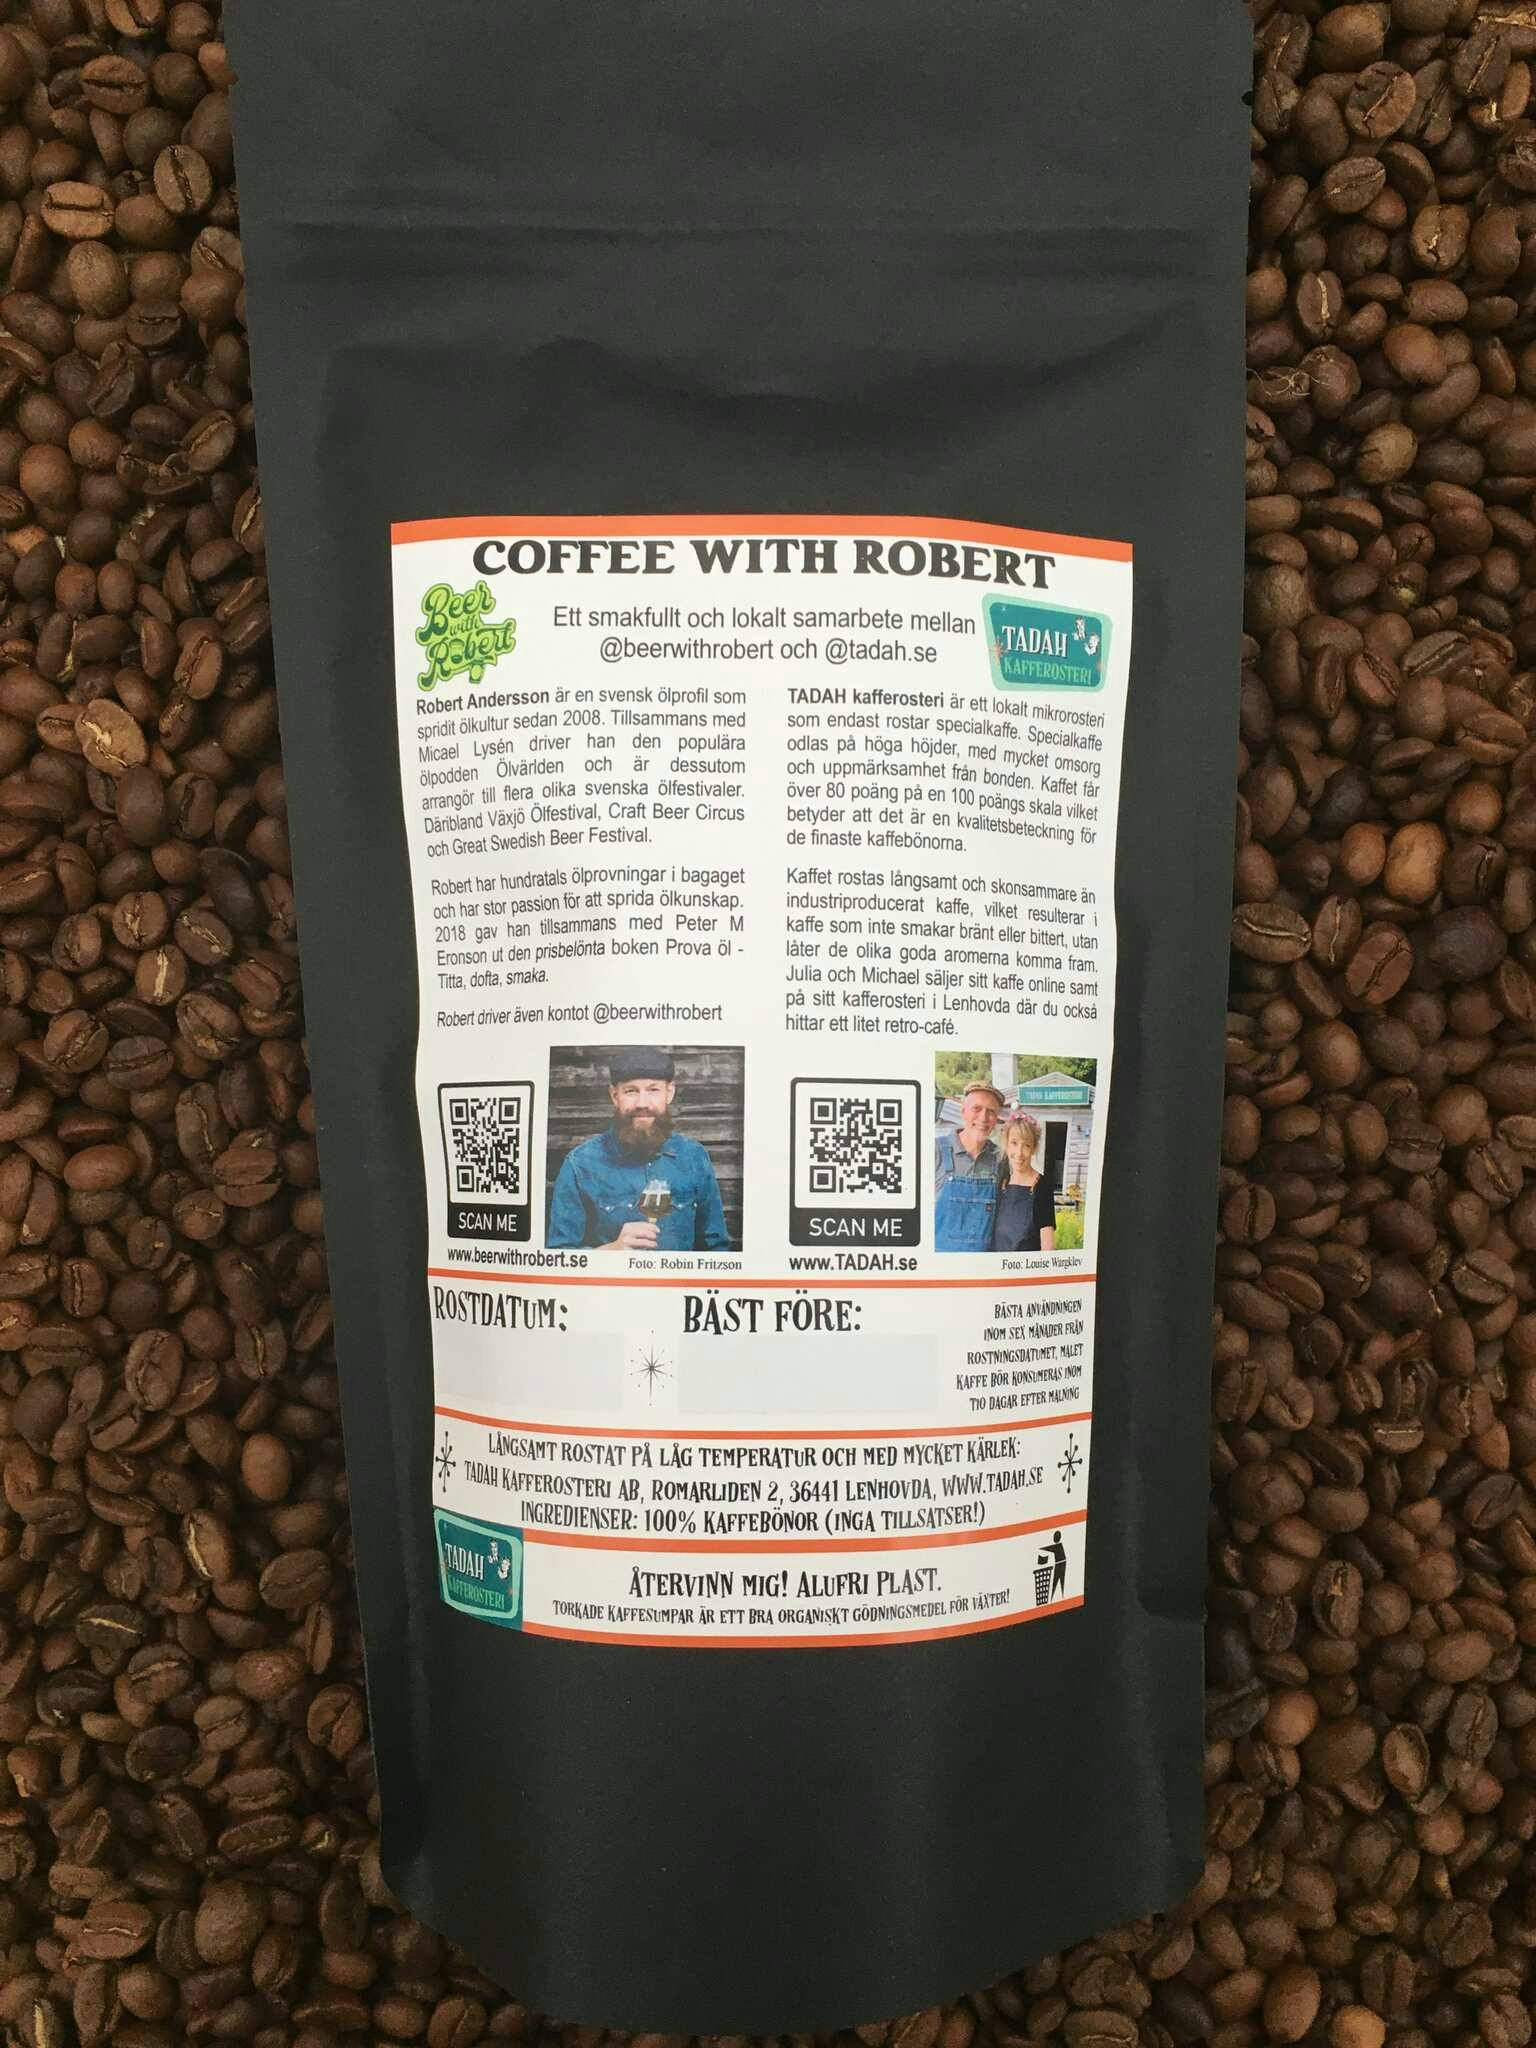 "Coffee with Robert"-coffee